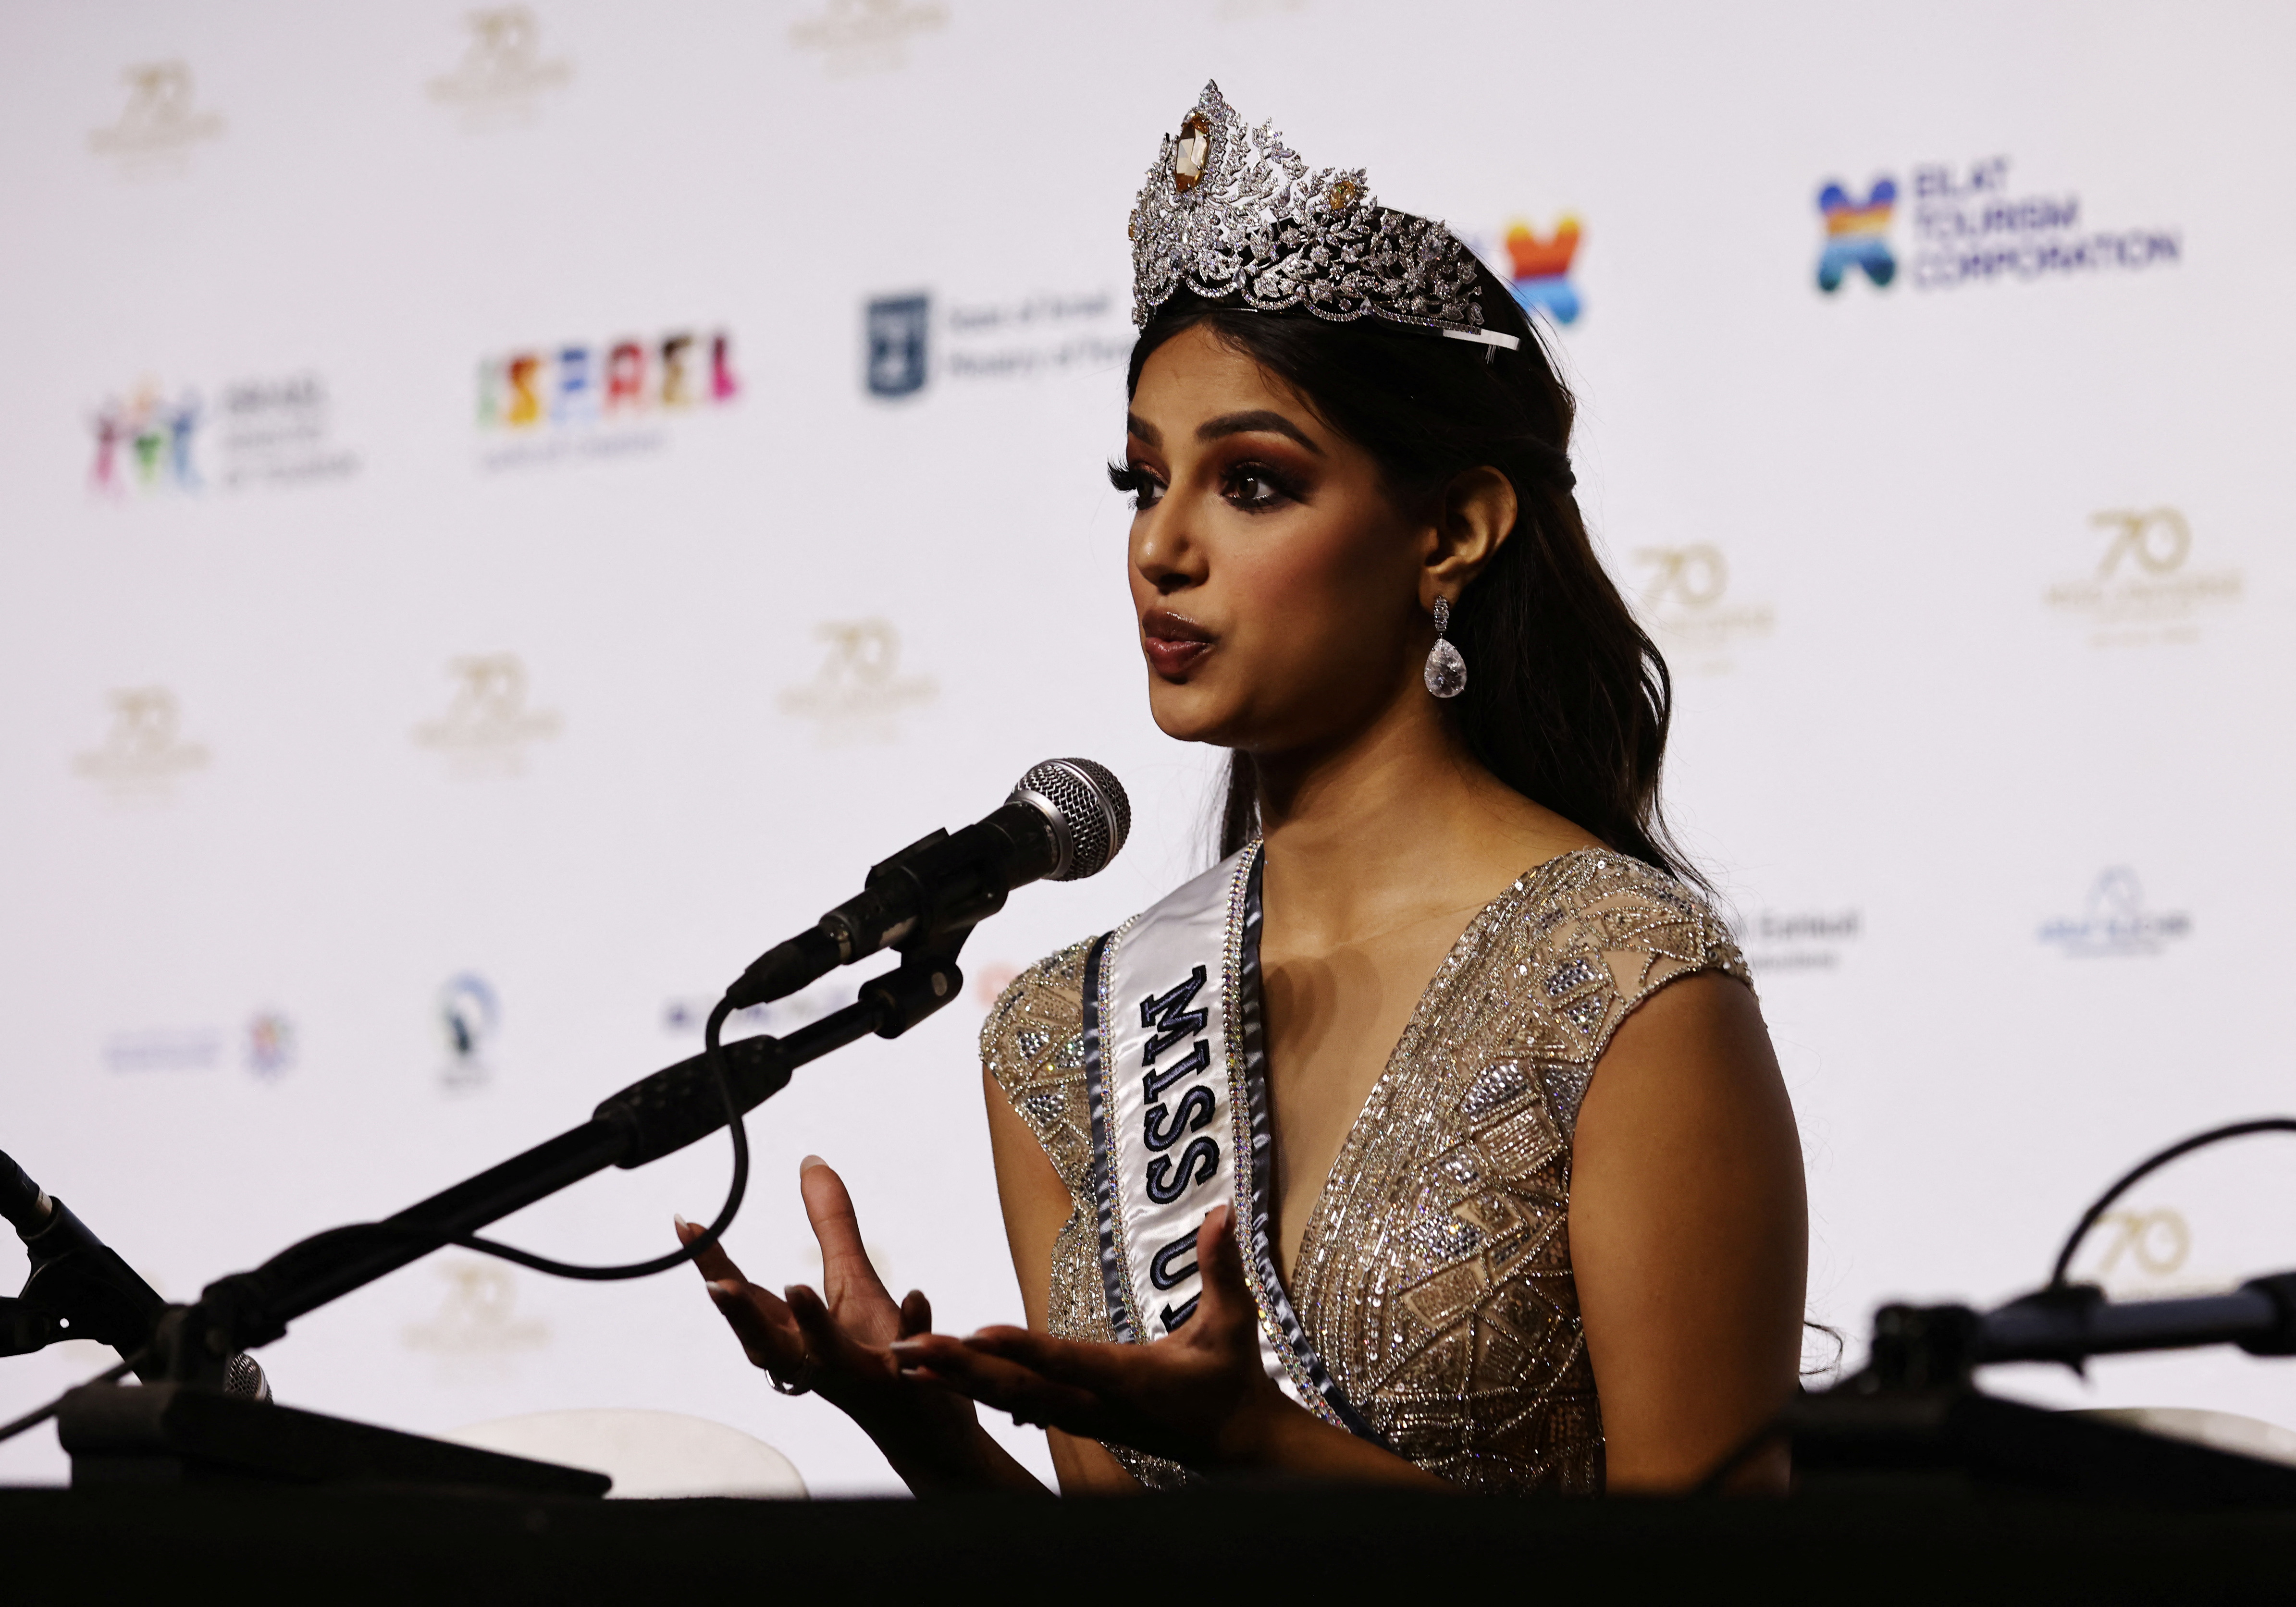 Harnaaz Sandhu de India habló en una conferencia de prensa después de coronarse como Miss Universe en Eilat, Israel. REUTERS/Ronen Zvulun